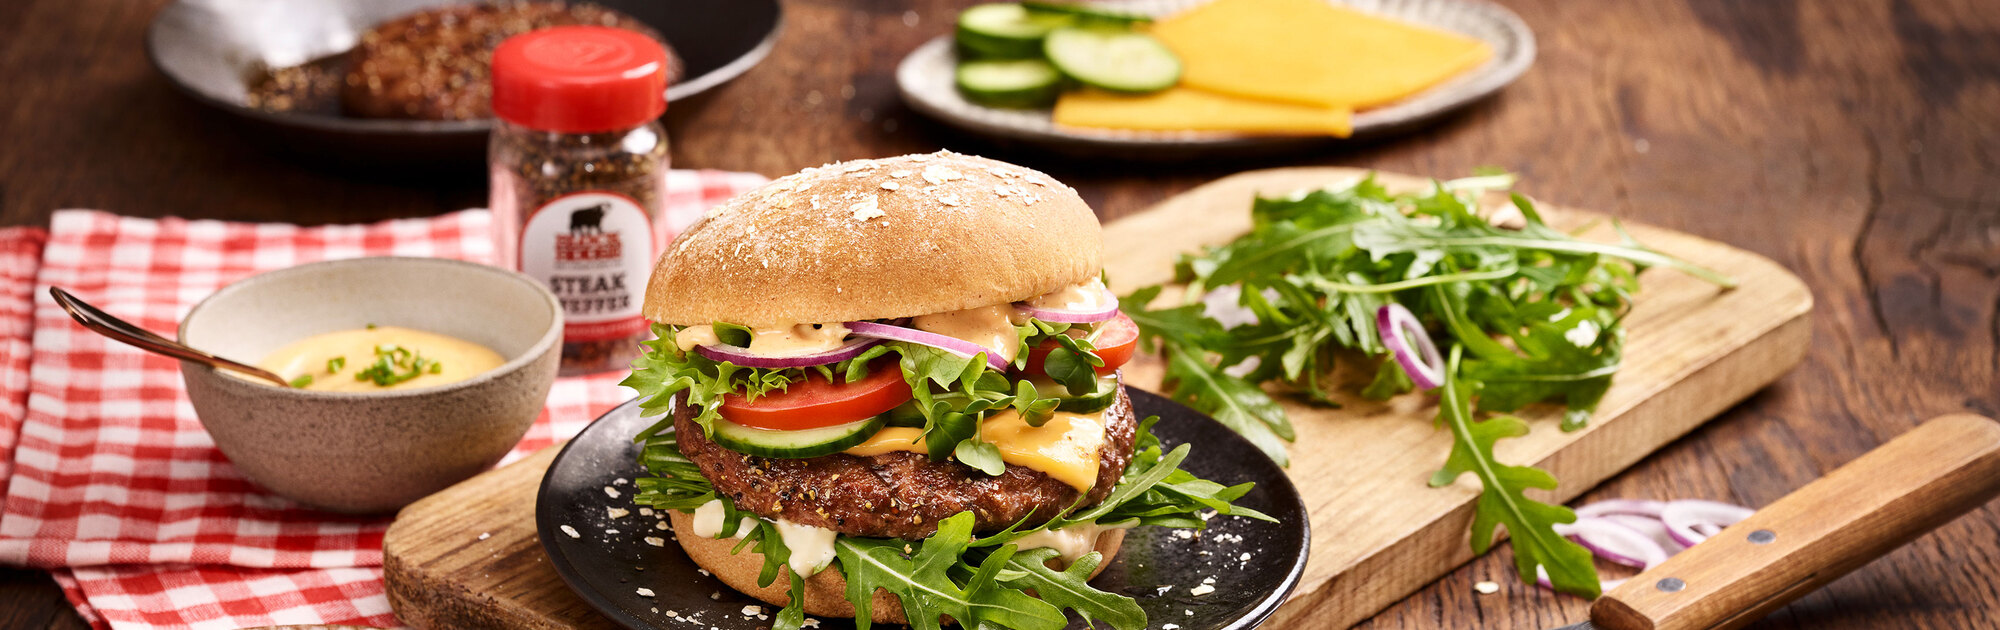 BLOCK HOUSE Burger mit Fleischpatty, Rucola, Tomate, Salat , Zwiebeln und Sauce auf einem Holzbrett mit verwendeten Zutaten im Hintergrund